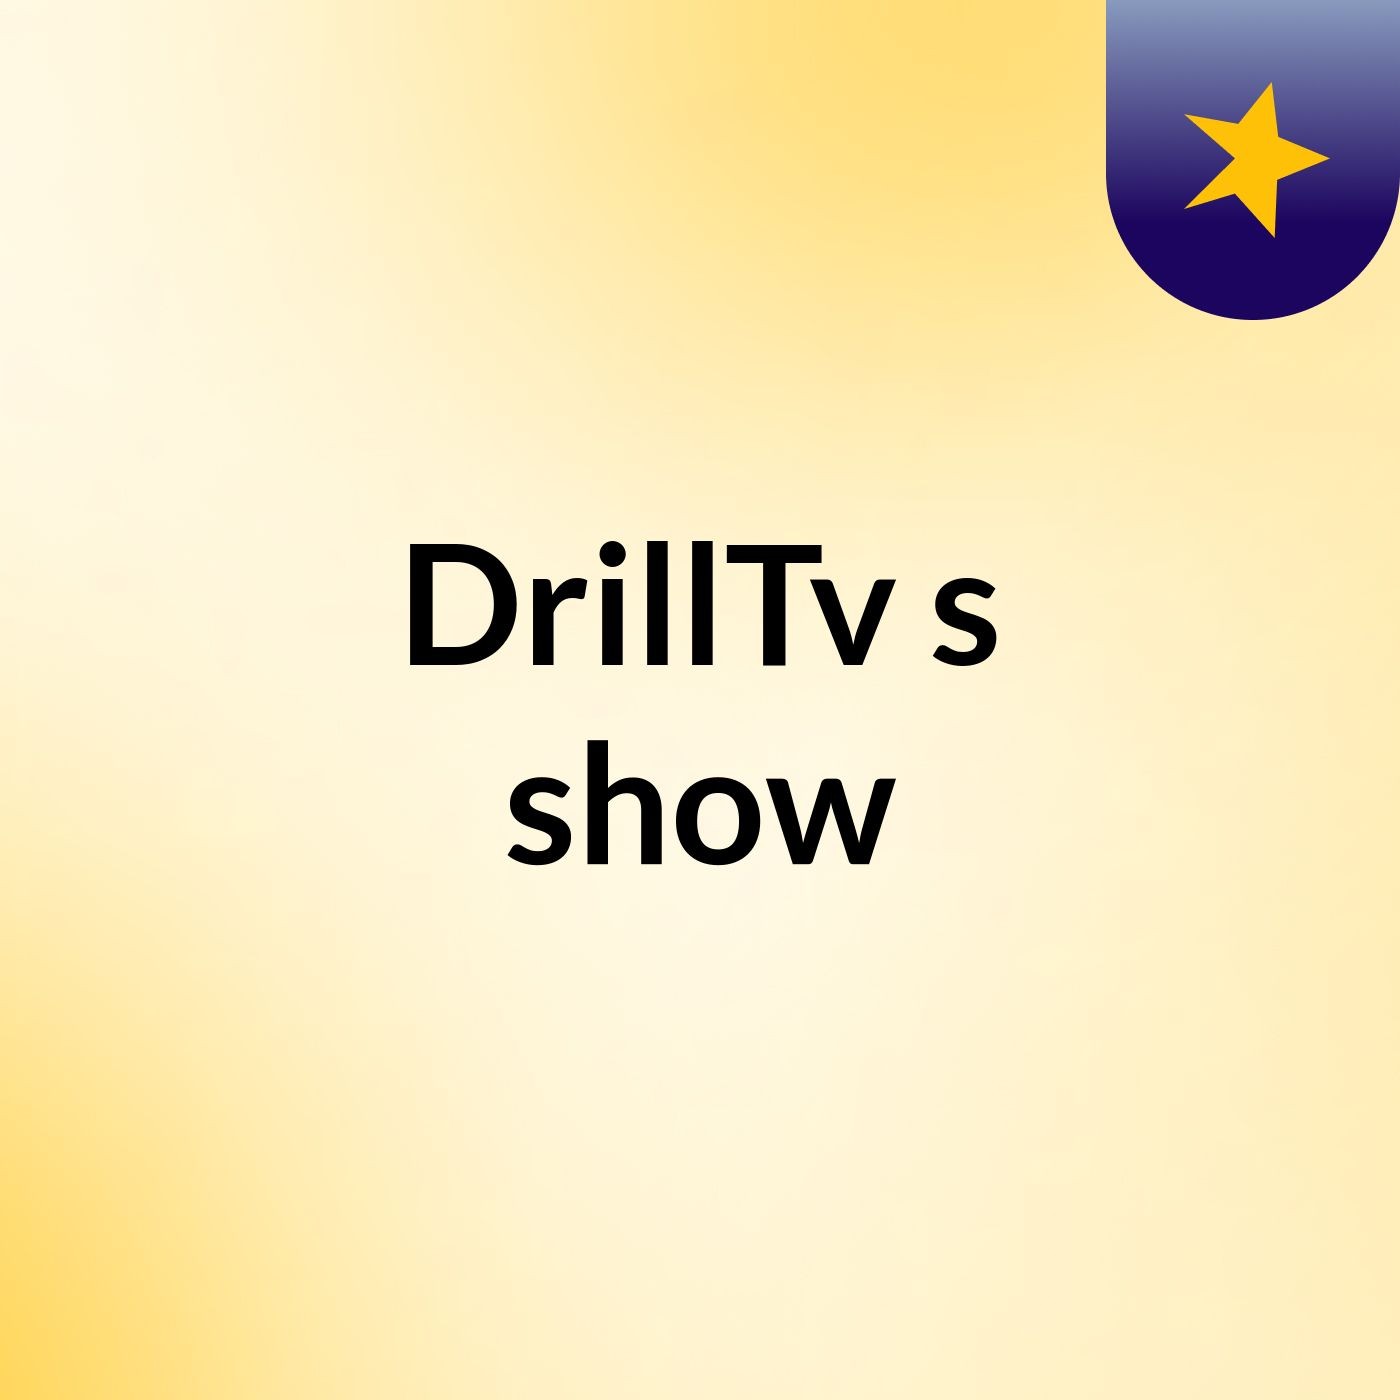 DrillTv's show